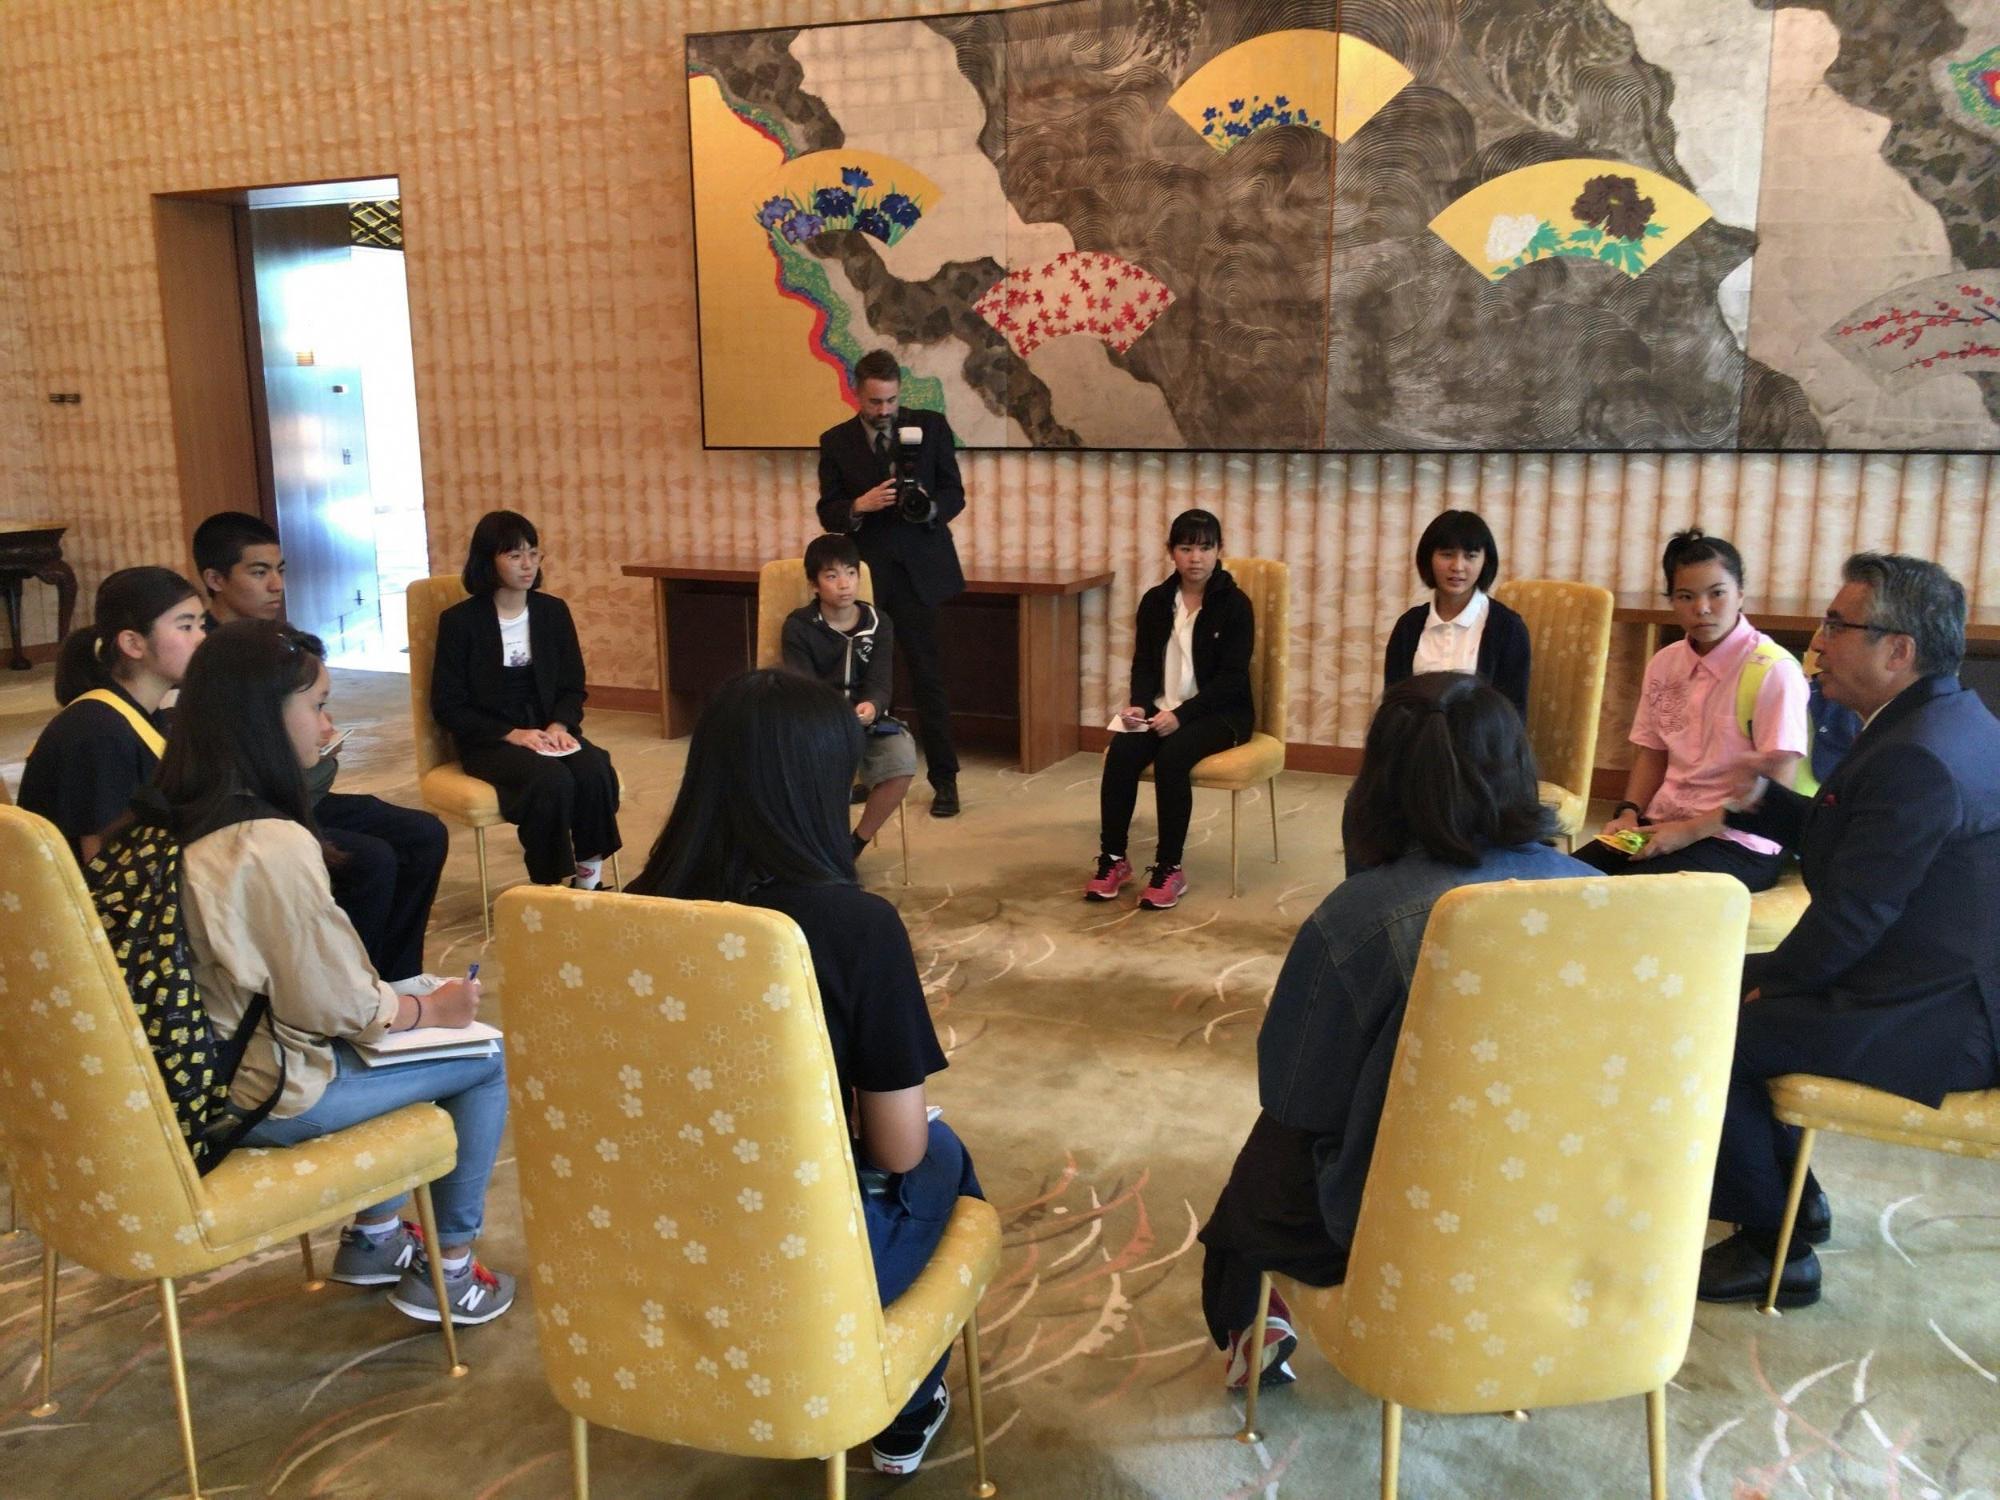 広間のような場所で、黄色の背もたれの椅子に各人が座り在米日本国大使の話を聞いている写真